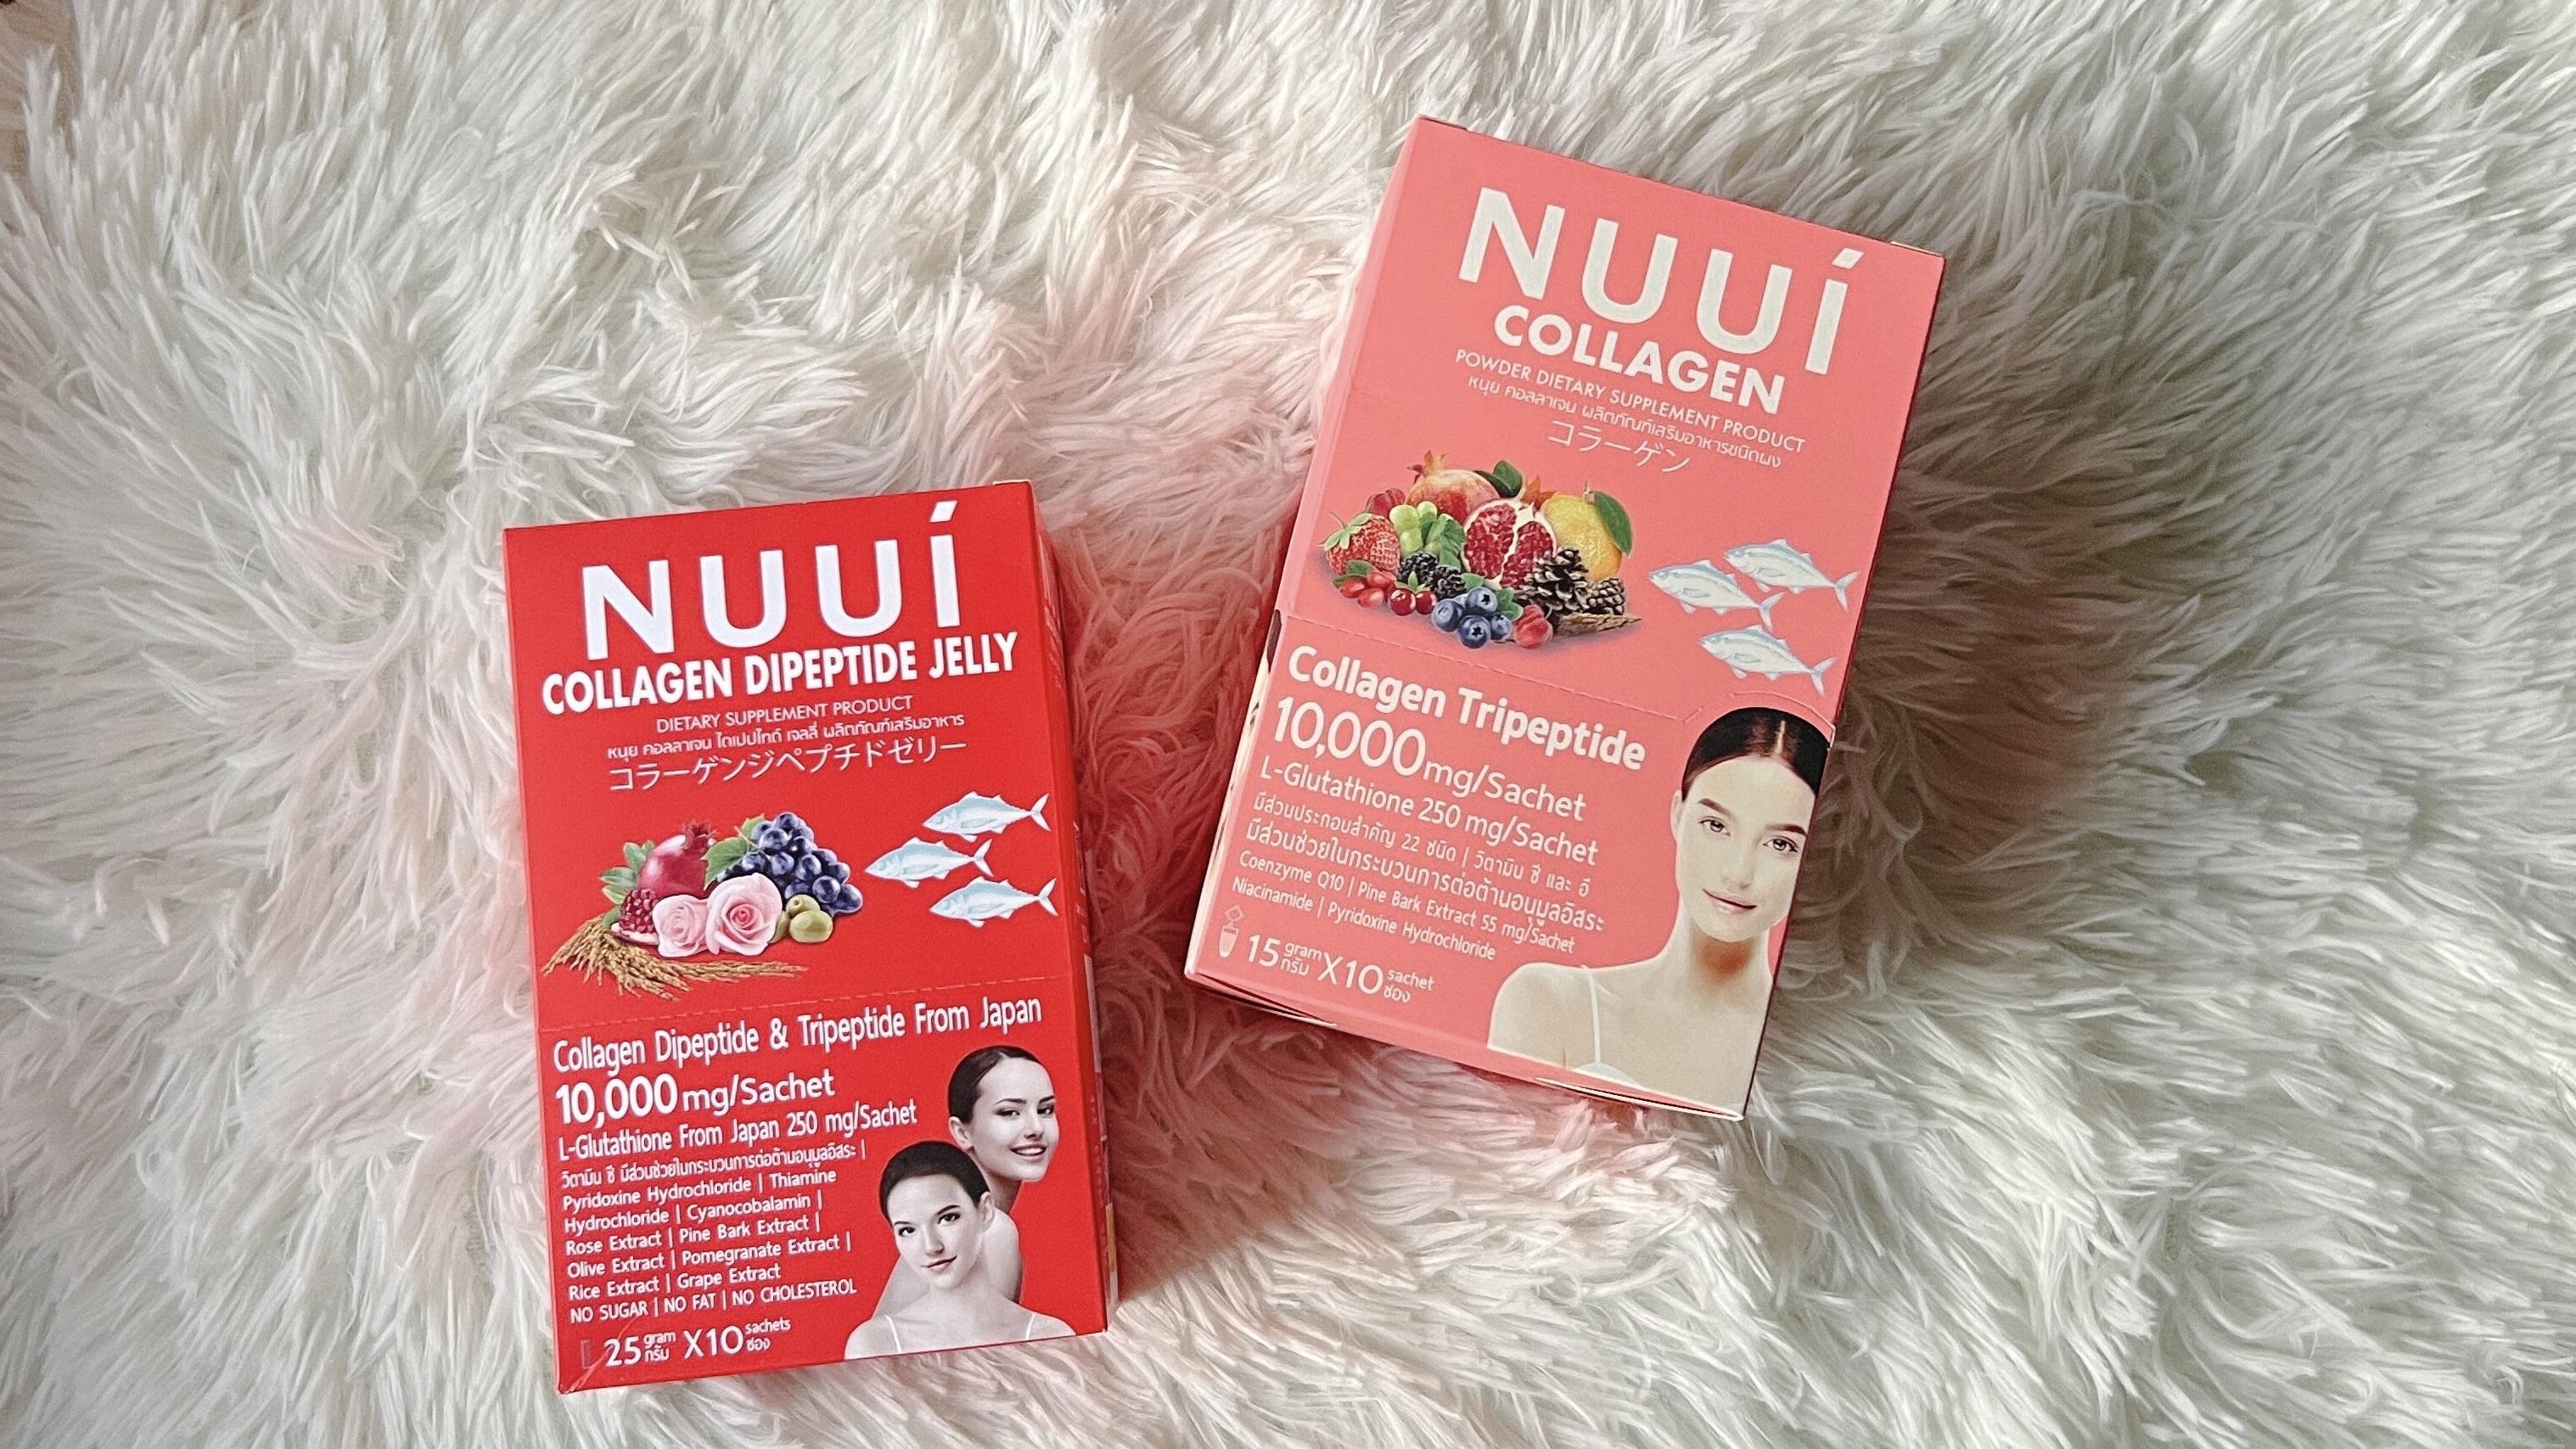 ภาพหน้าปก ขอป้ายยาอาหารเสริมบ้าง #Nuui collagen ที่:1